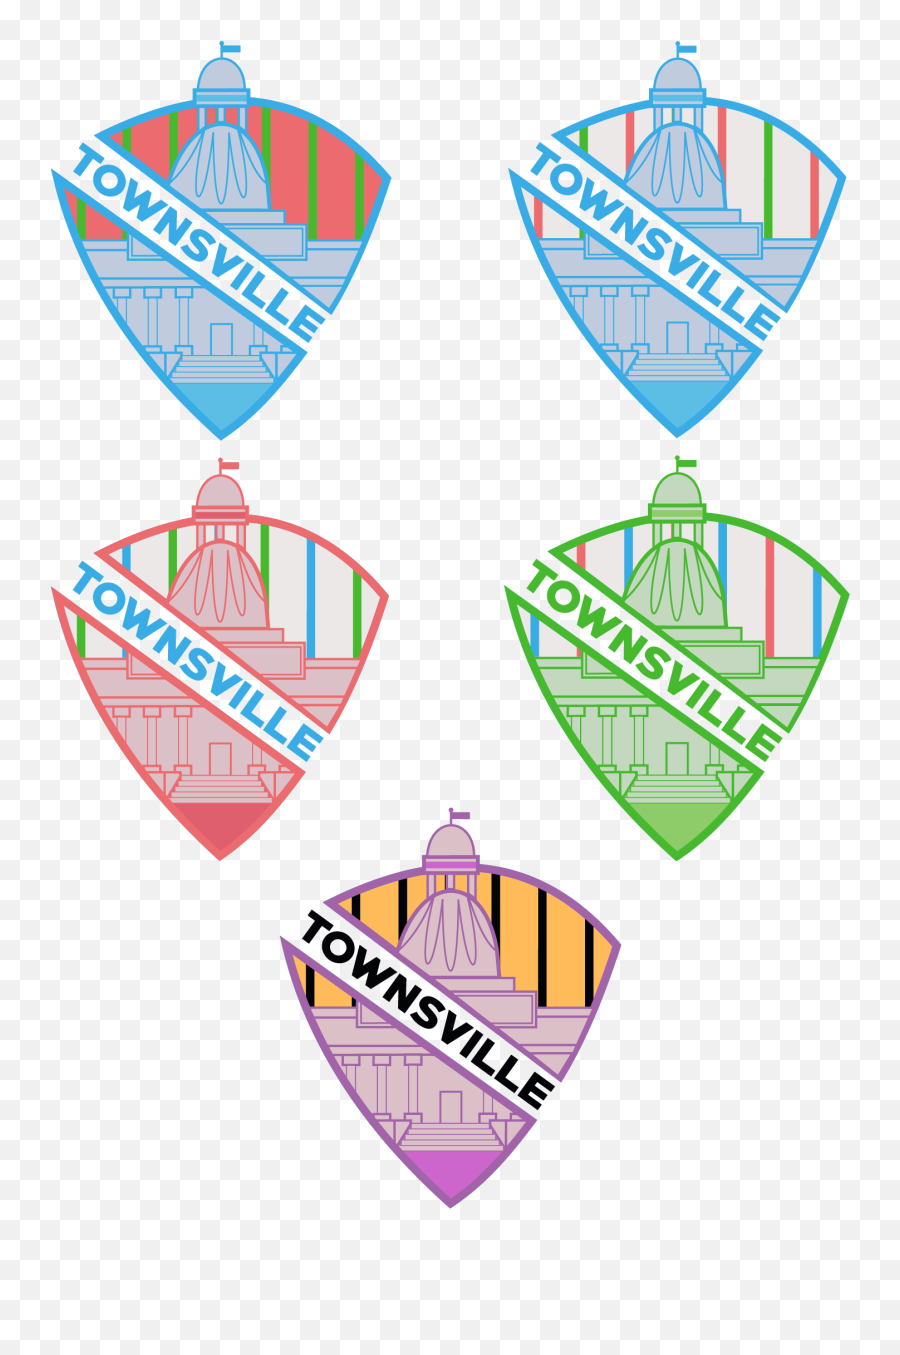 Cartoon Network Soccer Logos - Concepts Chris Creameru0027s Vertical Png,The Powerpuff Girls Logo